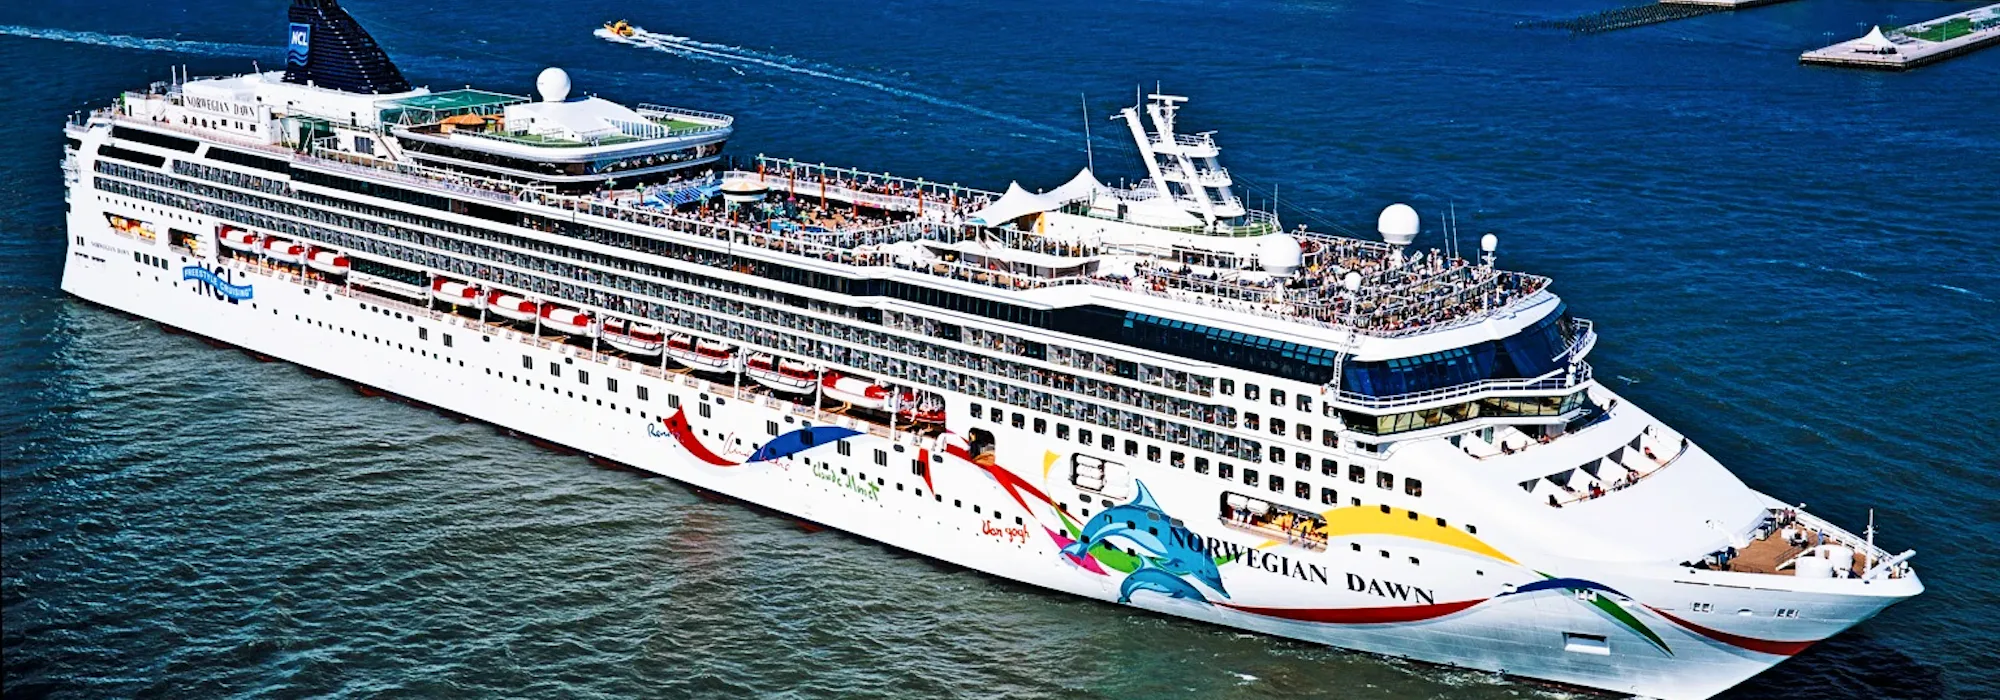 Norwegian Dawn - Norwegian Cruise